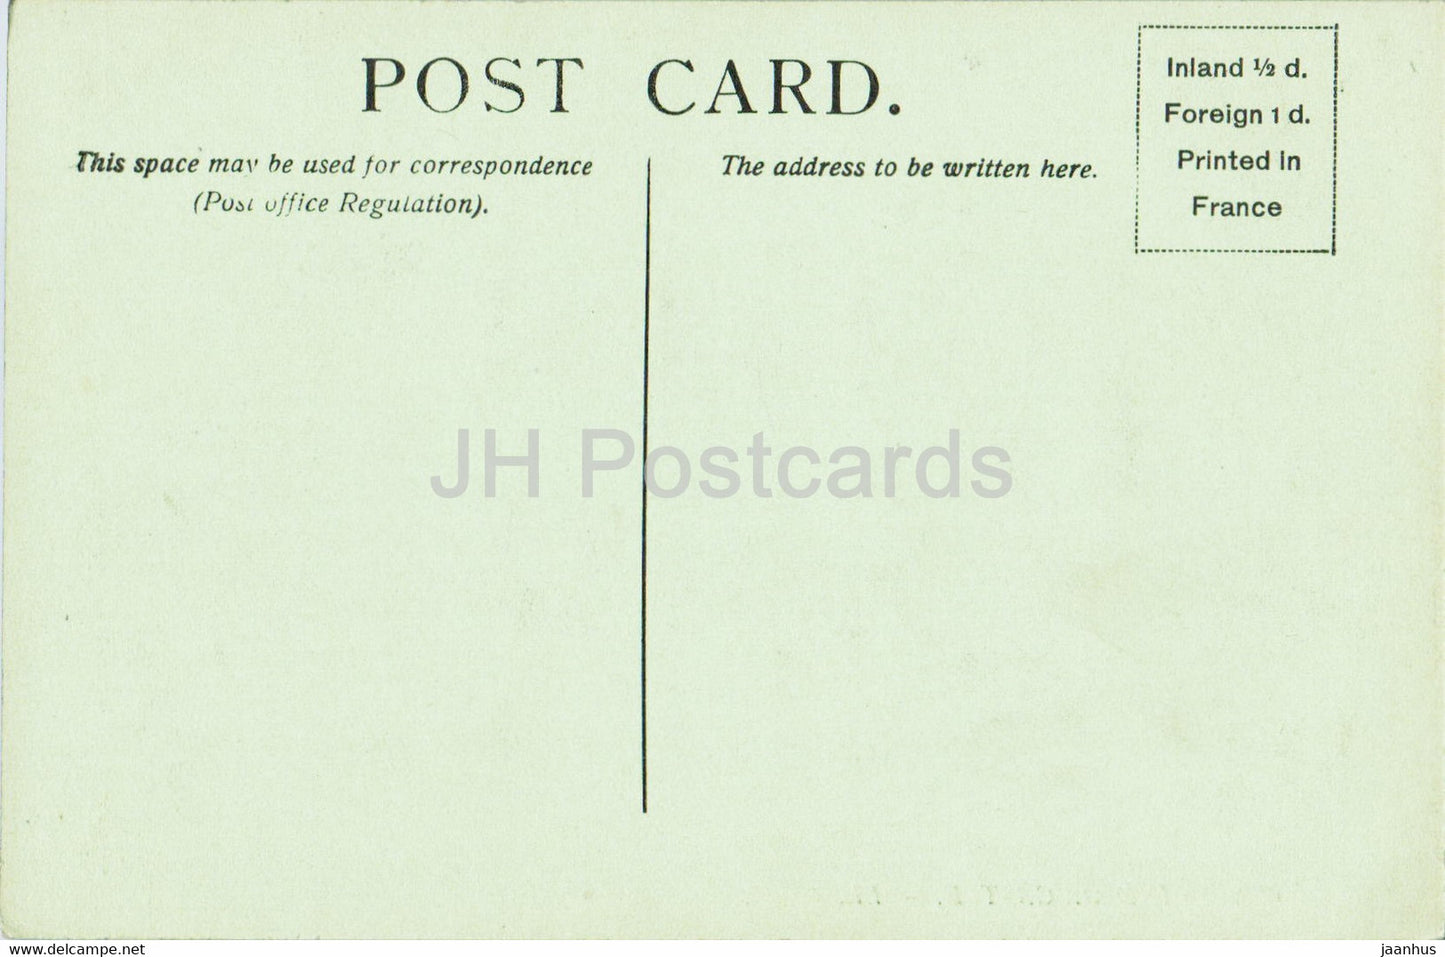 Windsor Castle - 499 - old postcard - England - United Kingdom - unused